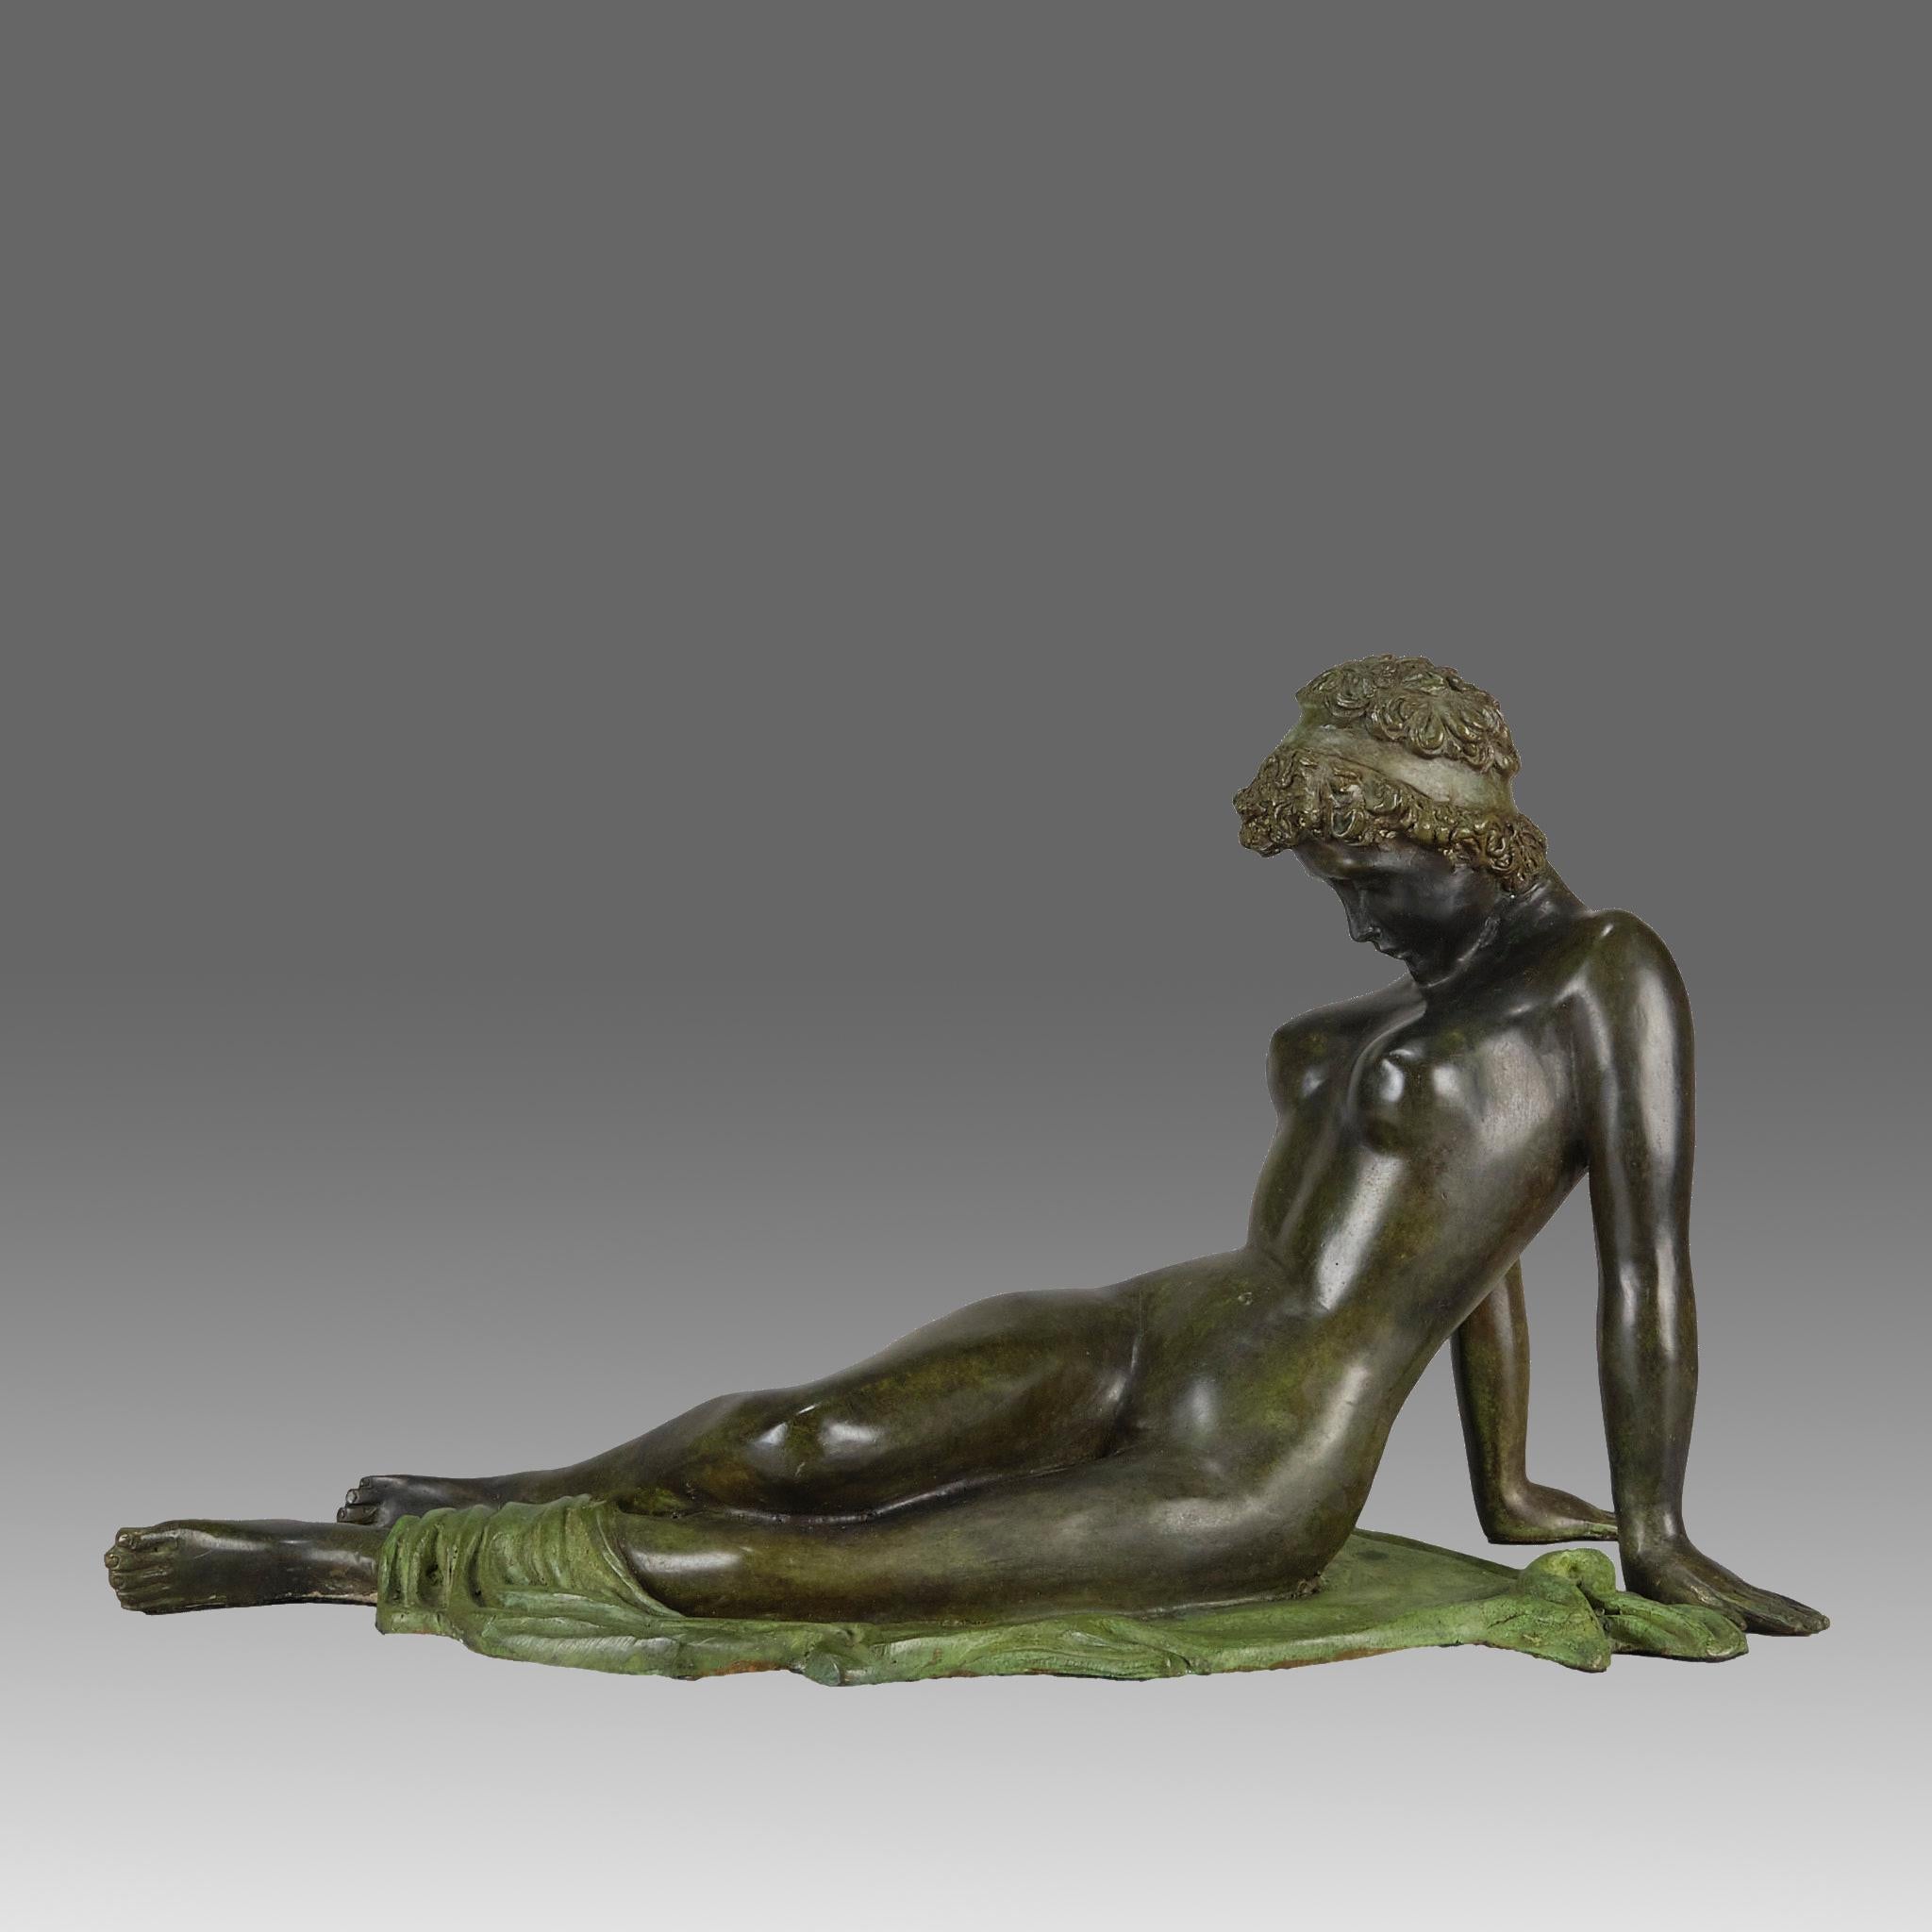 Très belle étude en bronze patiné du début du 20e siècle représentant une femme nue se reposant sur un châle avec l'air d'une profonde contemplation. Le bronze présente une très belle couleur verte et brune riche et de bons détails de surface finis